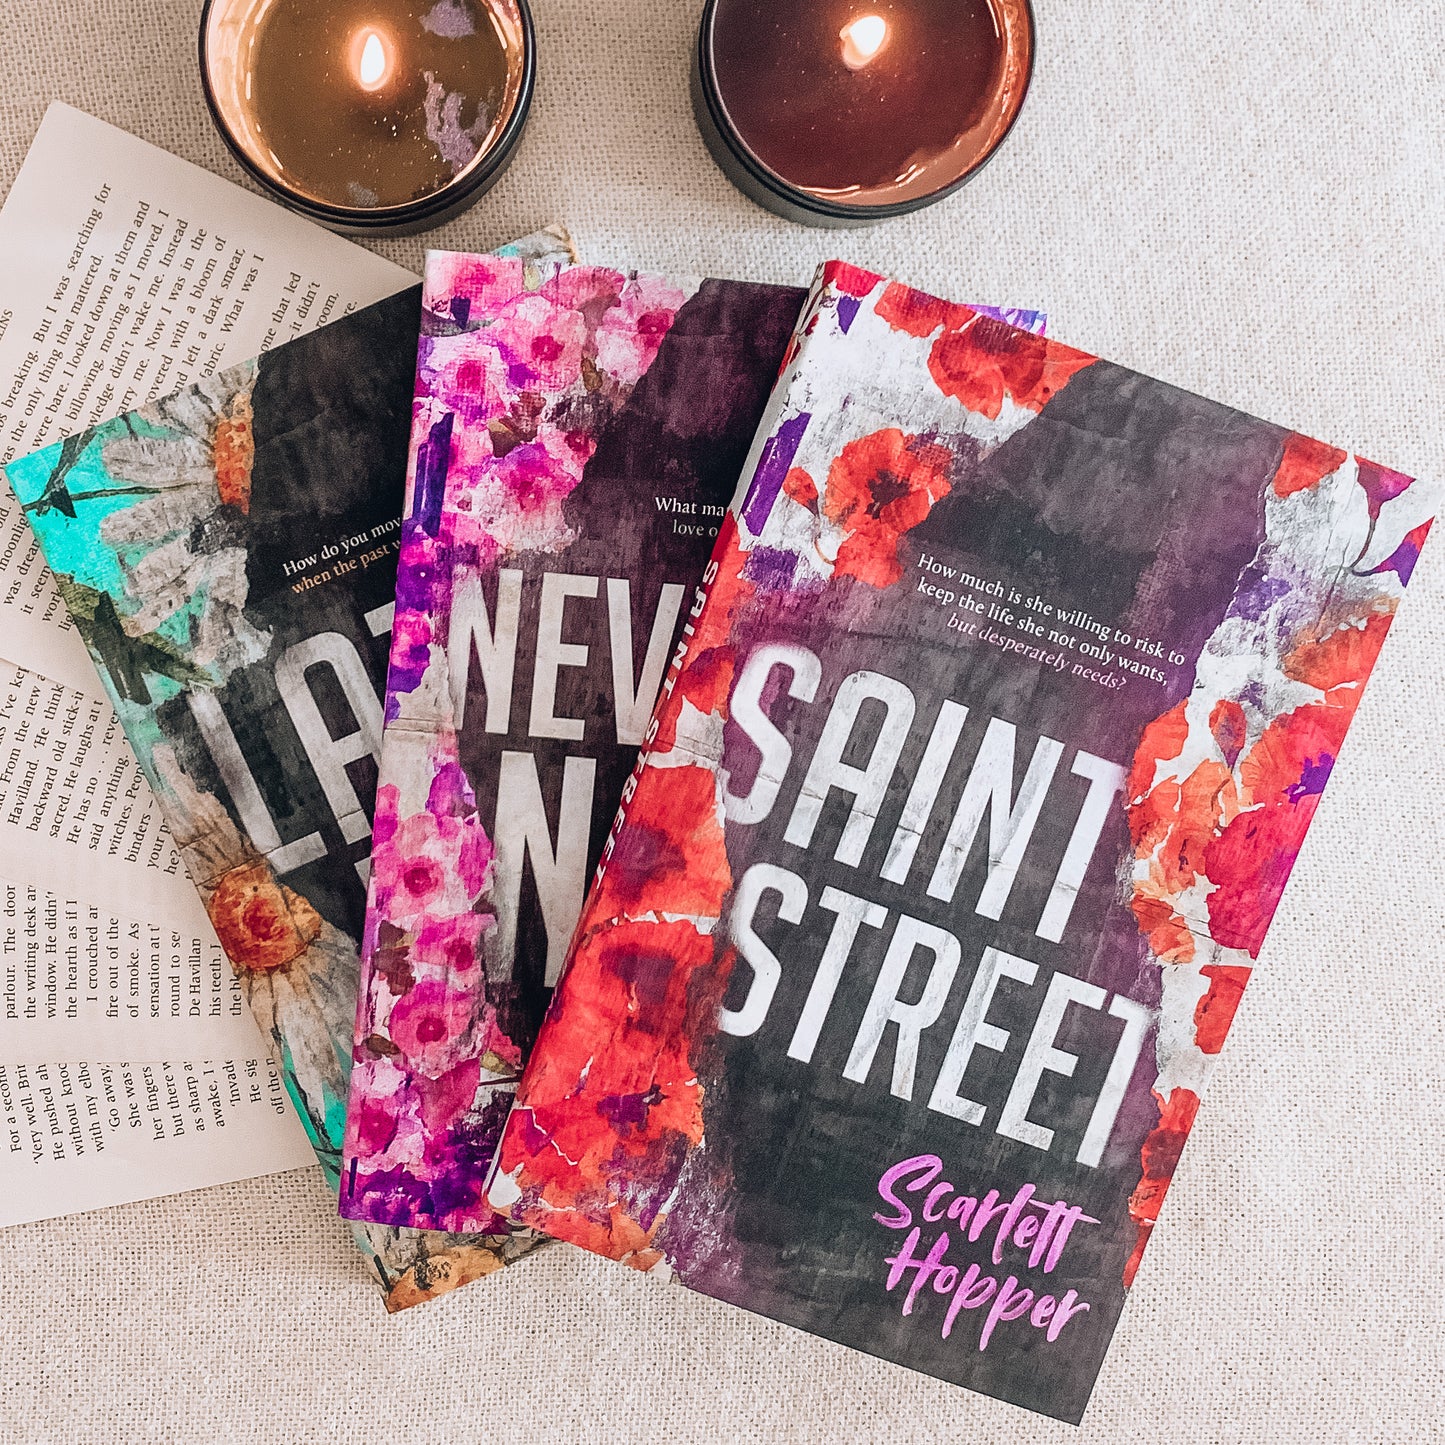 Saint Street Series by Scarlett Hopper